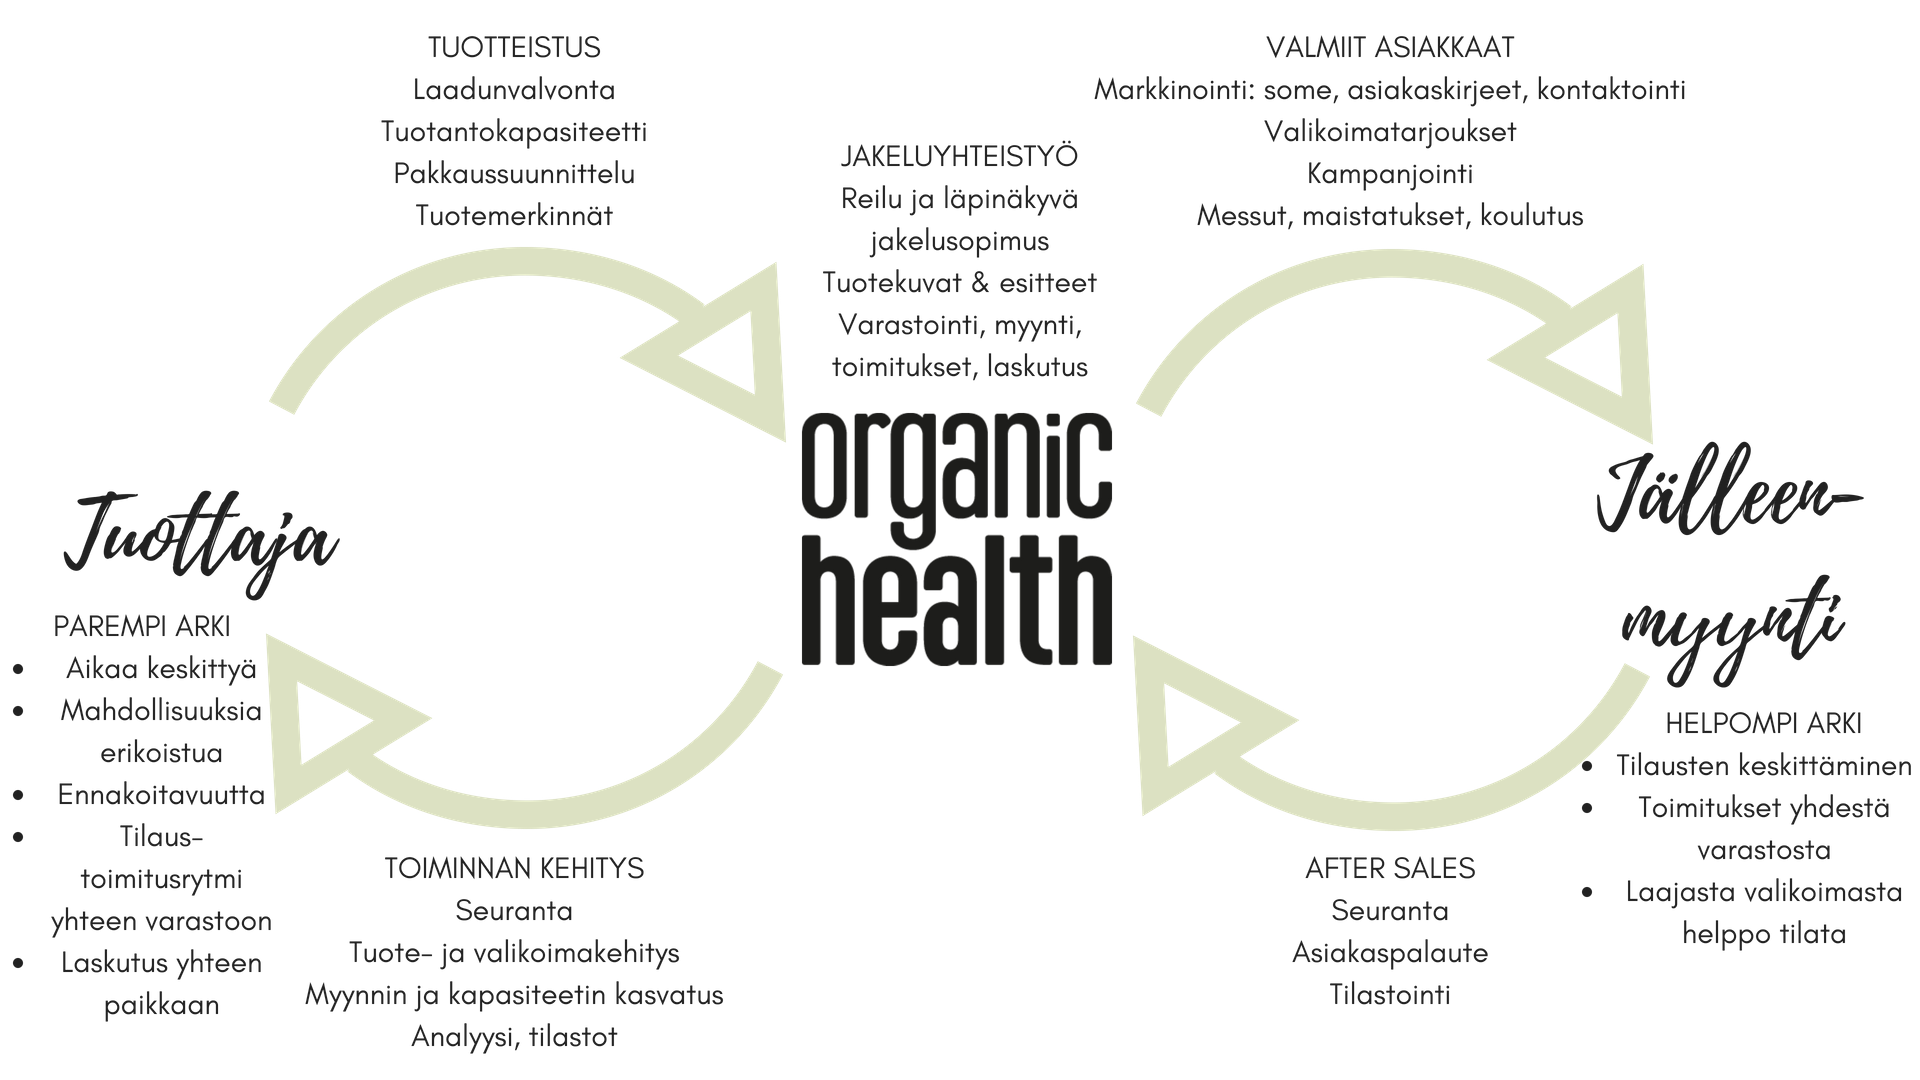 Organic Health -tukkujakelu